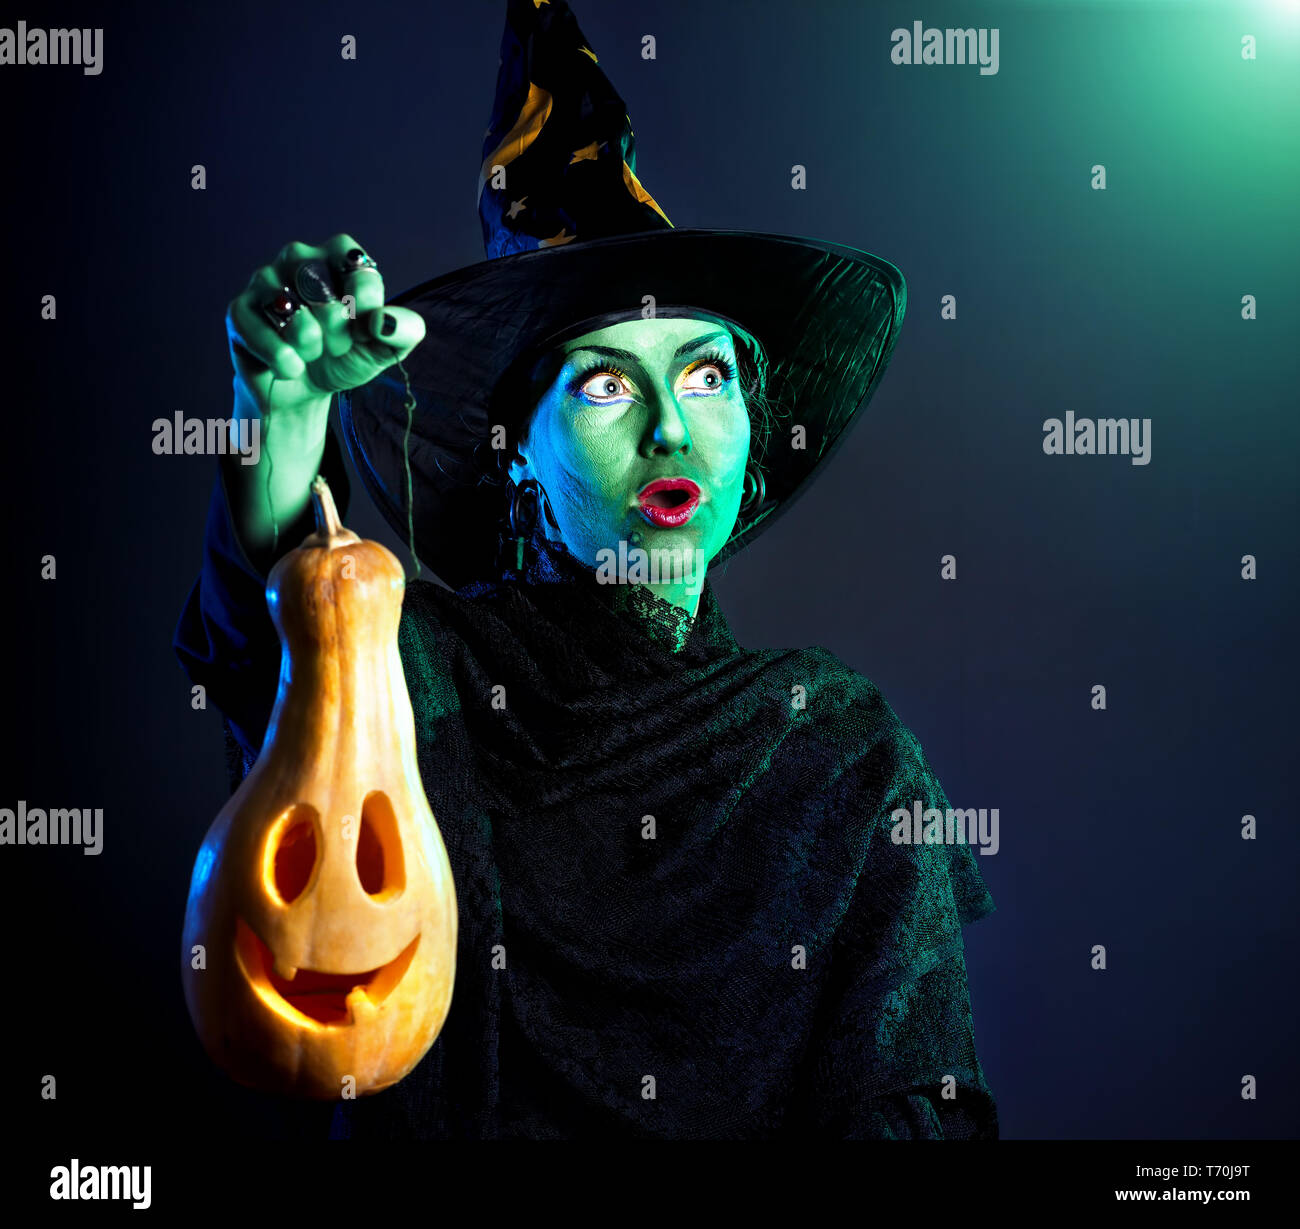 Hexe mit grüner Haut Holding geschnitzten Halloween Kürbis Laterne an dunklen Hintergrund Stockfoto